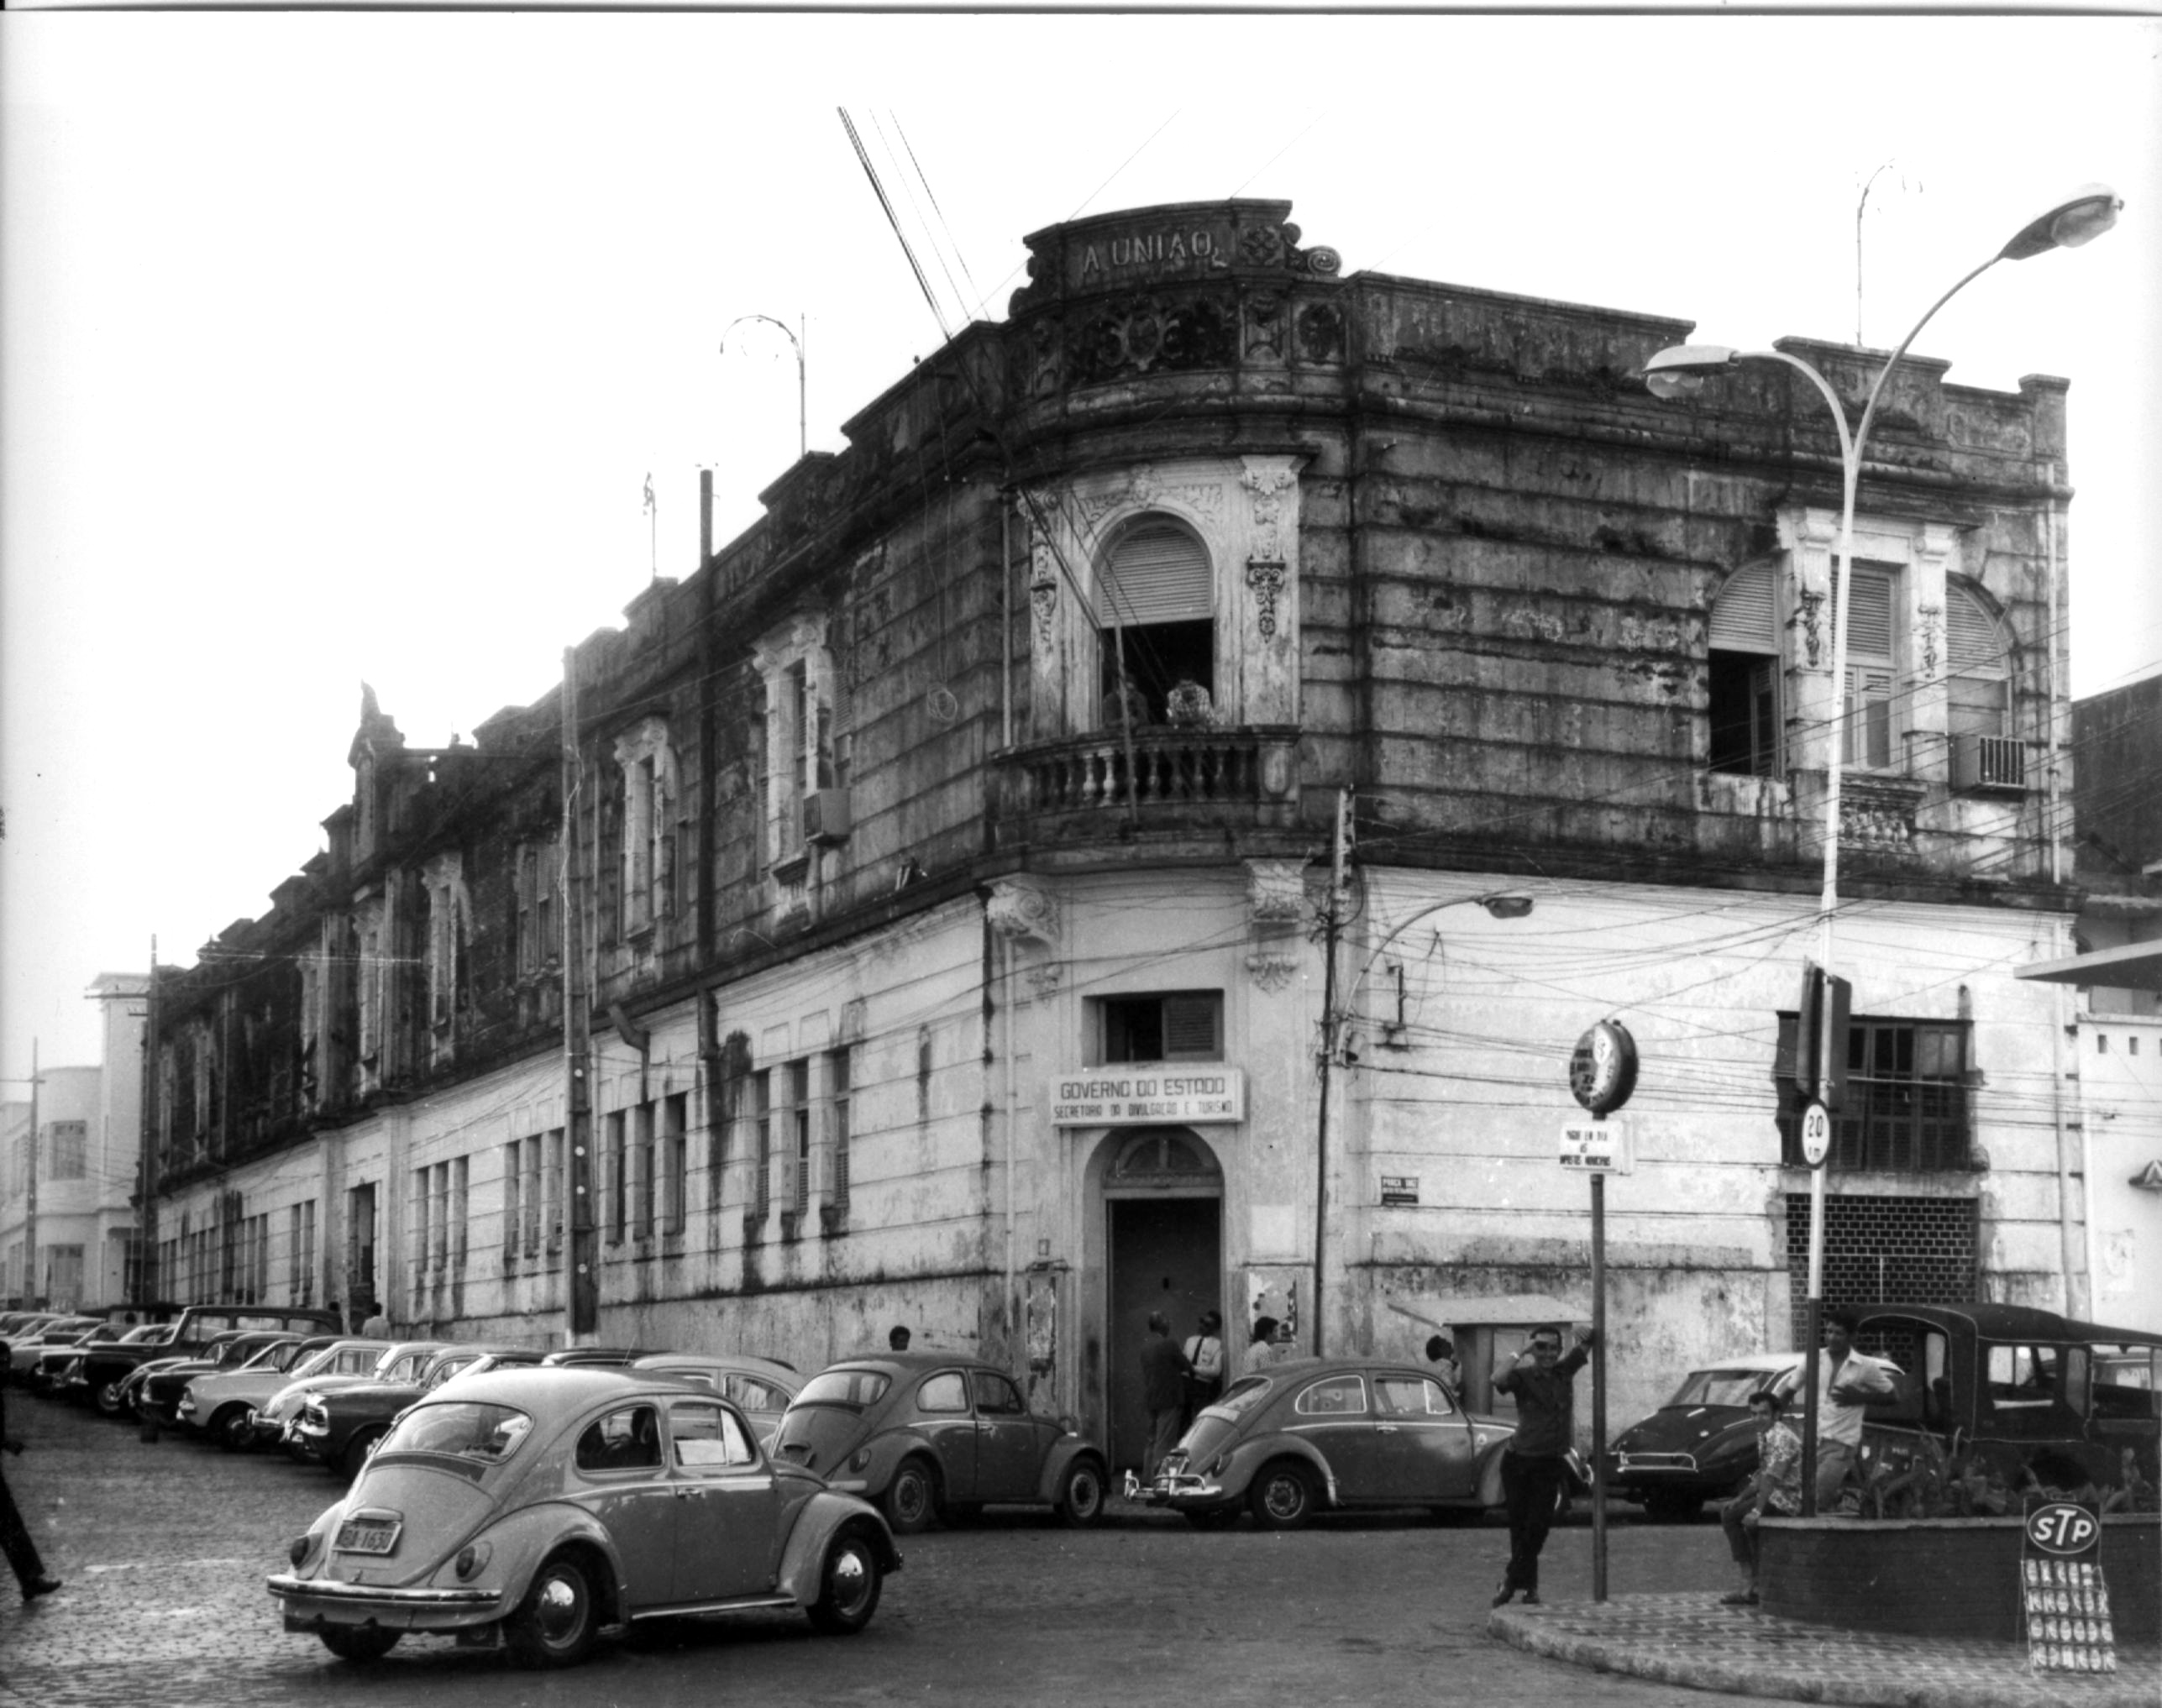 Uma das últimas fotos da fachada do prédio do jornal, antes da demolição para construção do atual prédio da Assembleia Legislativa